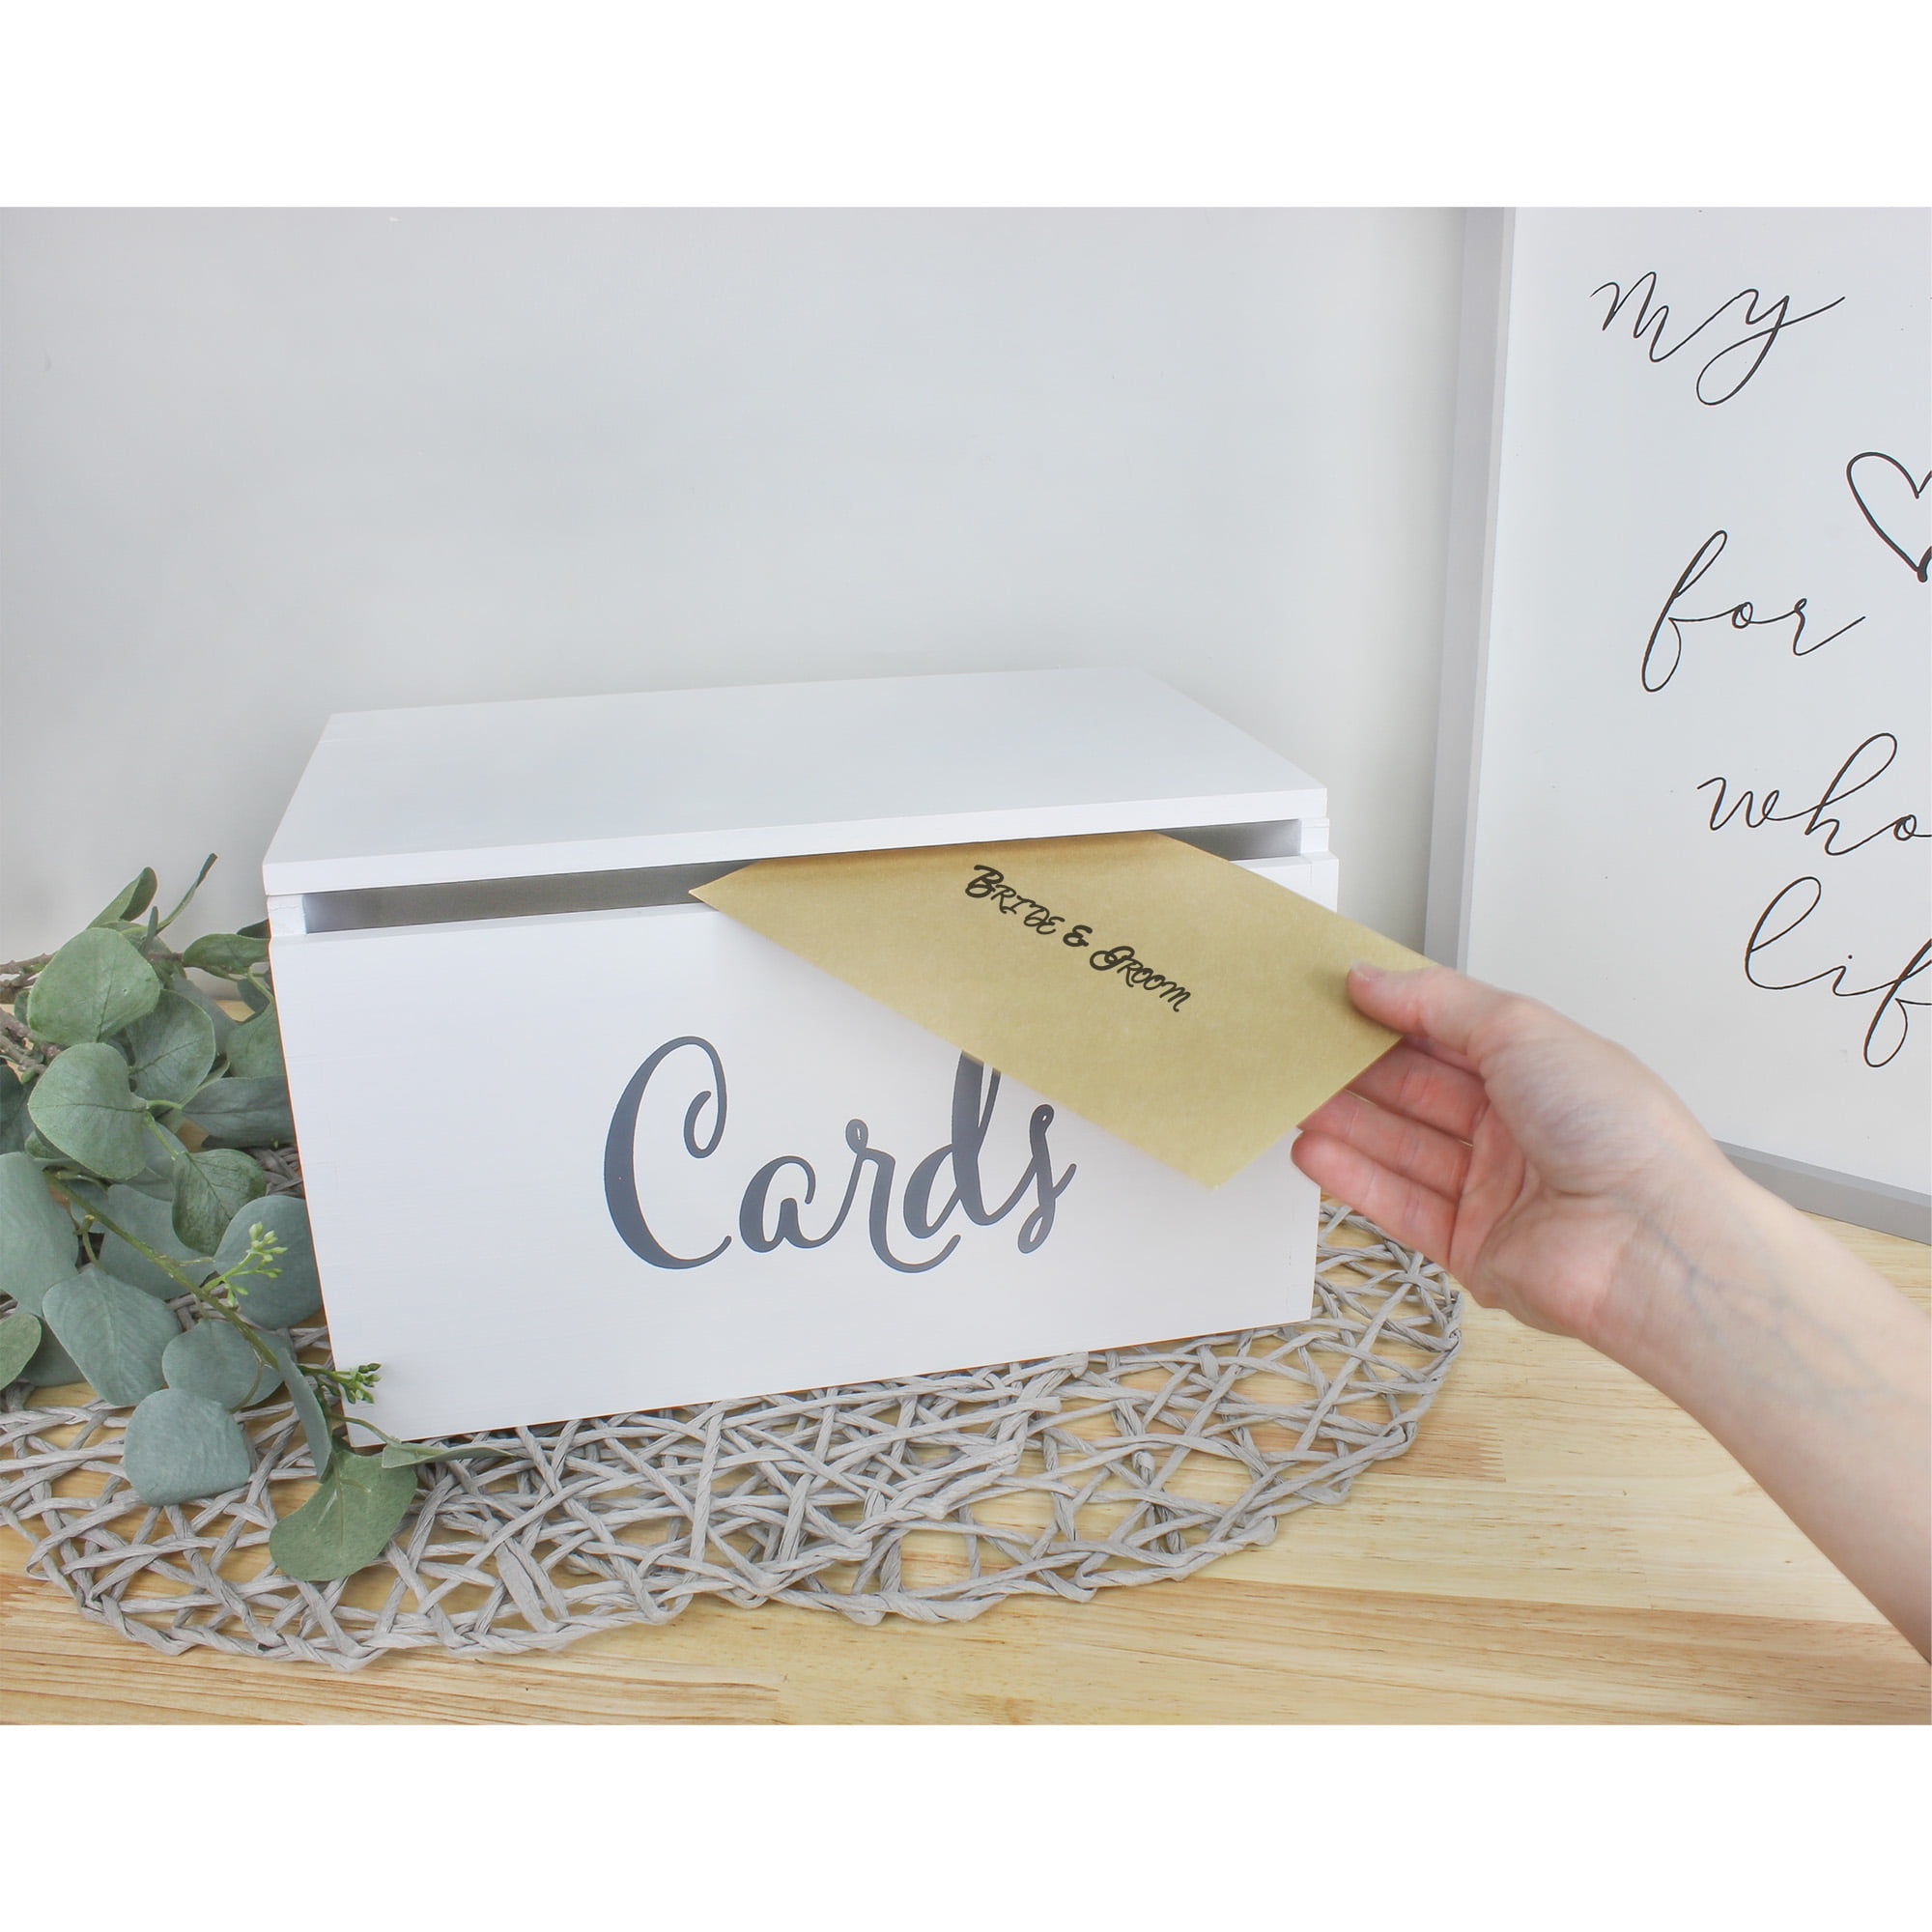 Card Box Wedding • White Wedding Decor • Big Day – Should Buy Wood